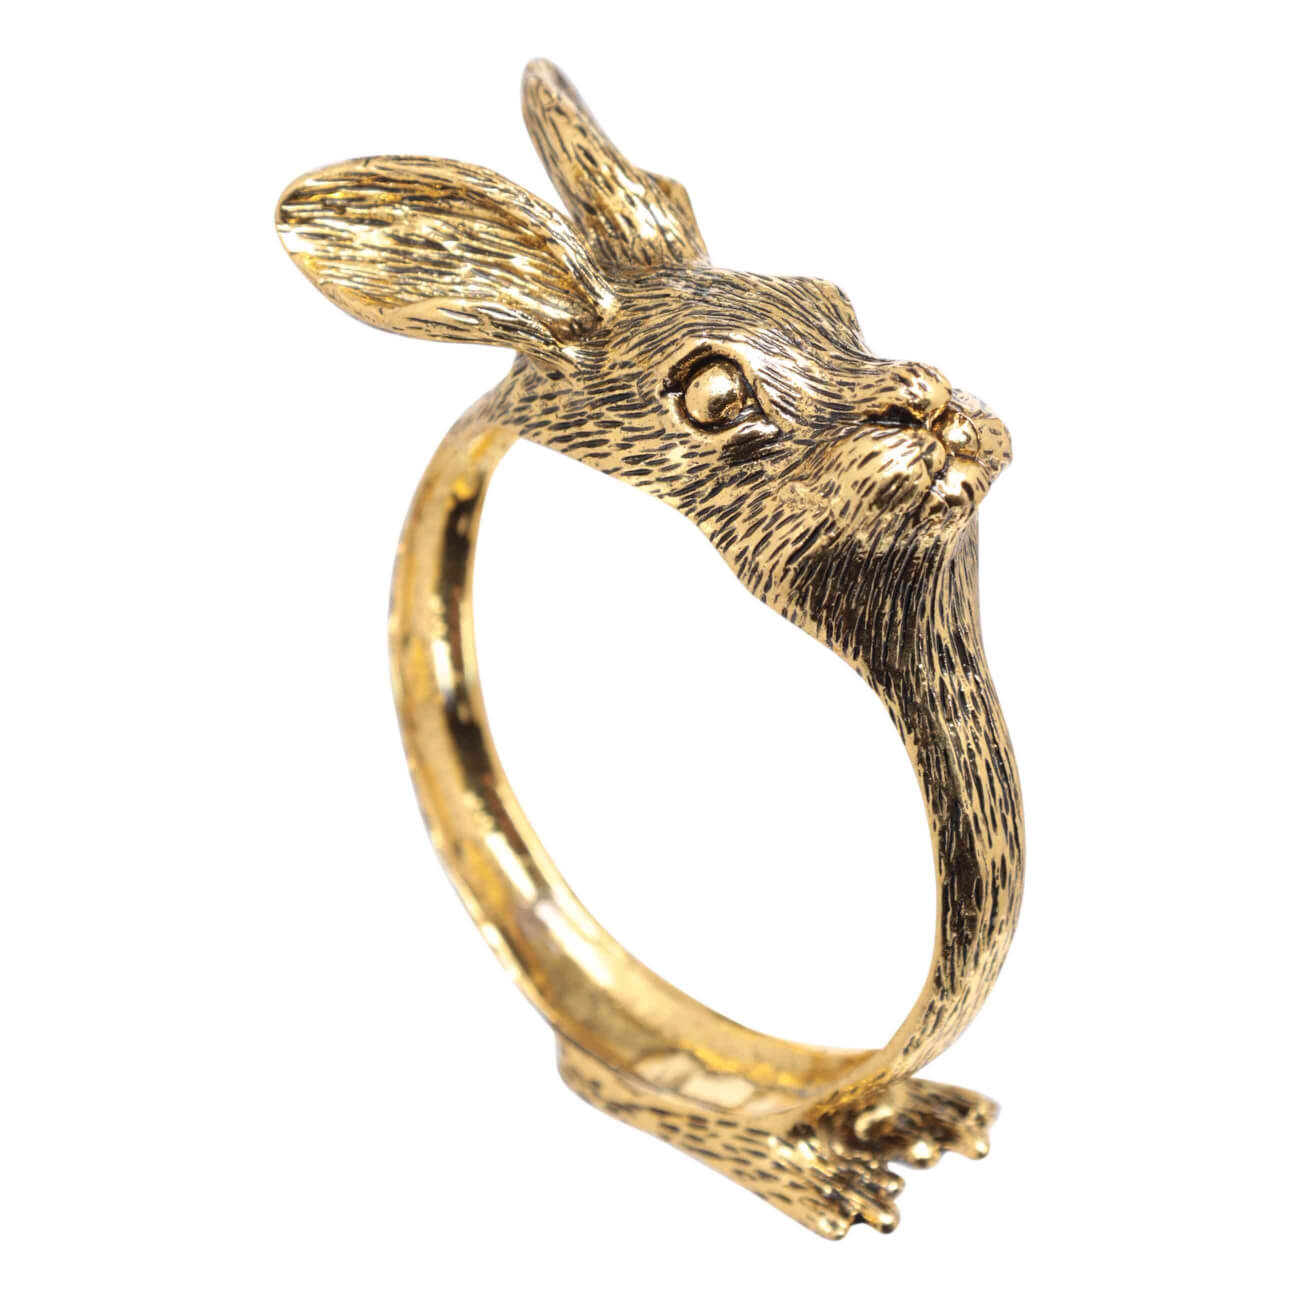 Кольцо для салфеток, 6 см, металл, золотистое, Кролик, Rabbit gold игрушка 20 см мягкая с подвижными лапами полиэстер белая кролик rabbit toy